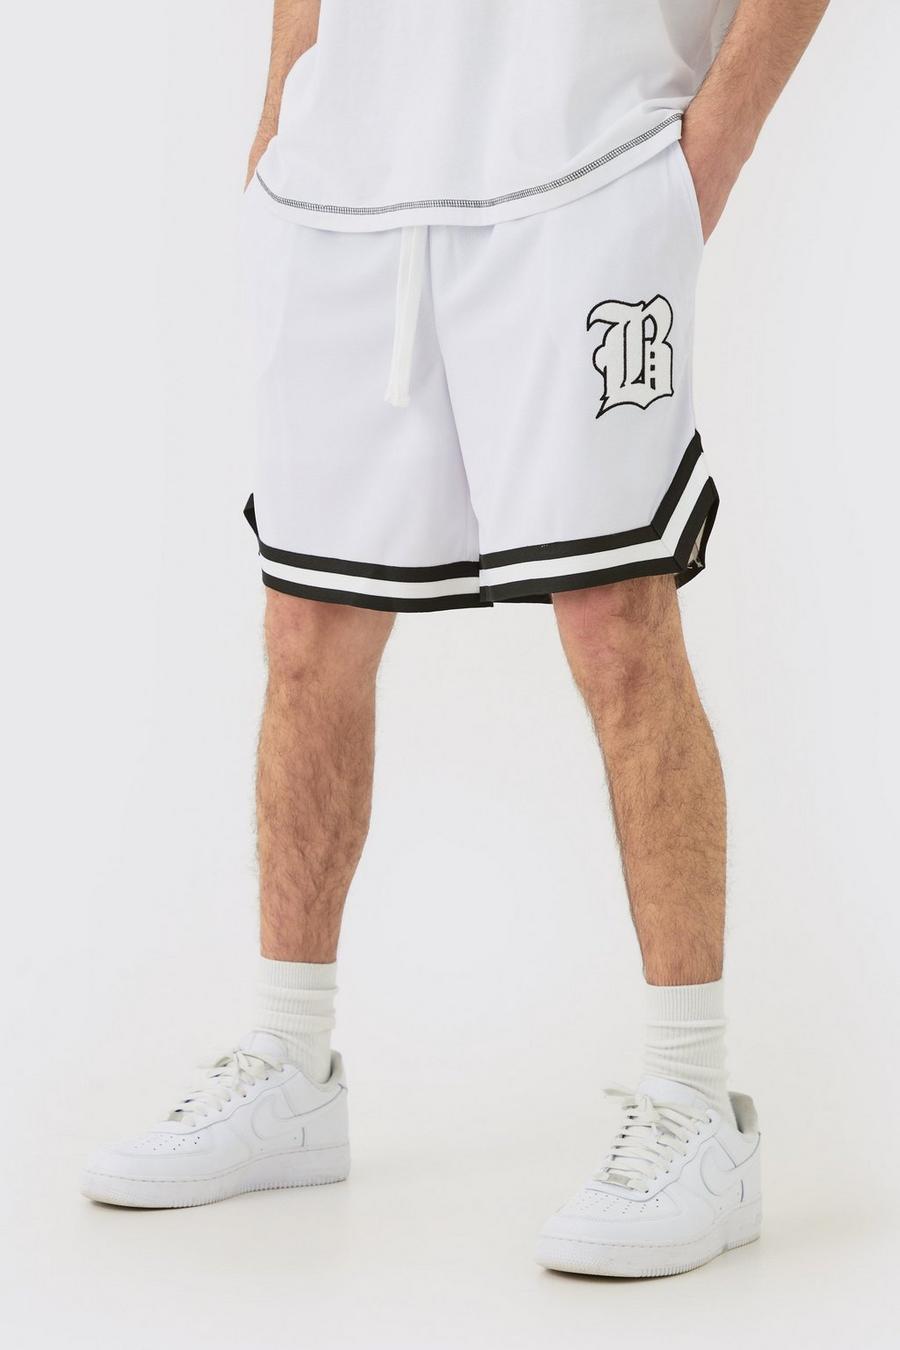 Pantaloncini da basket comodi in rete con applique di lettera B, White